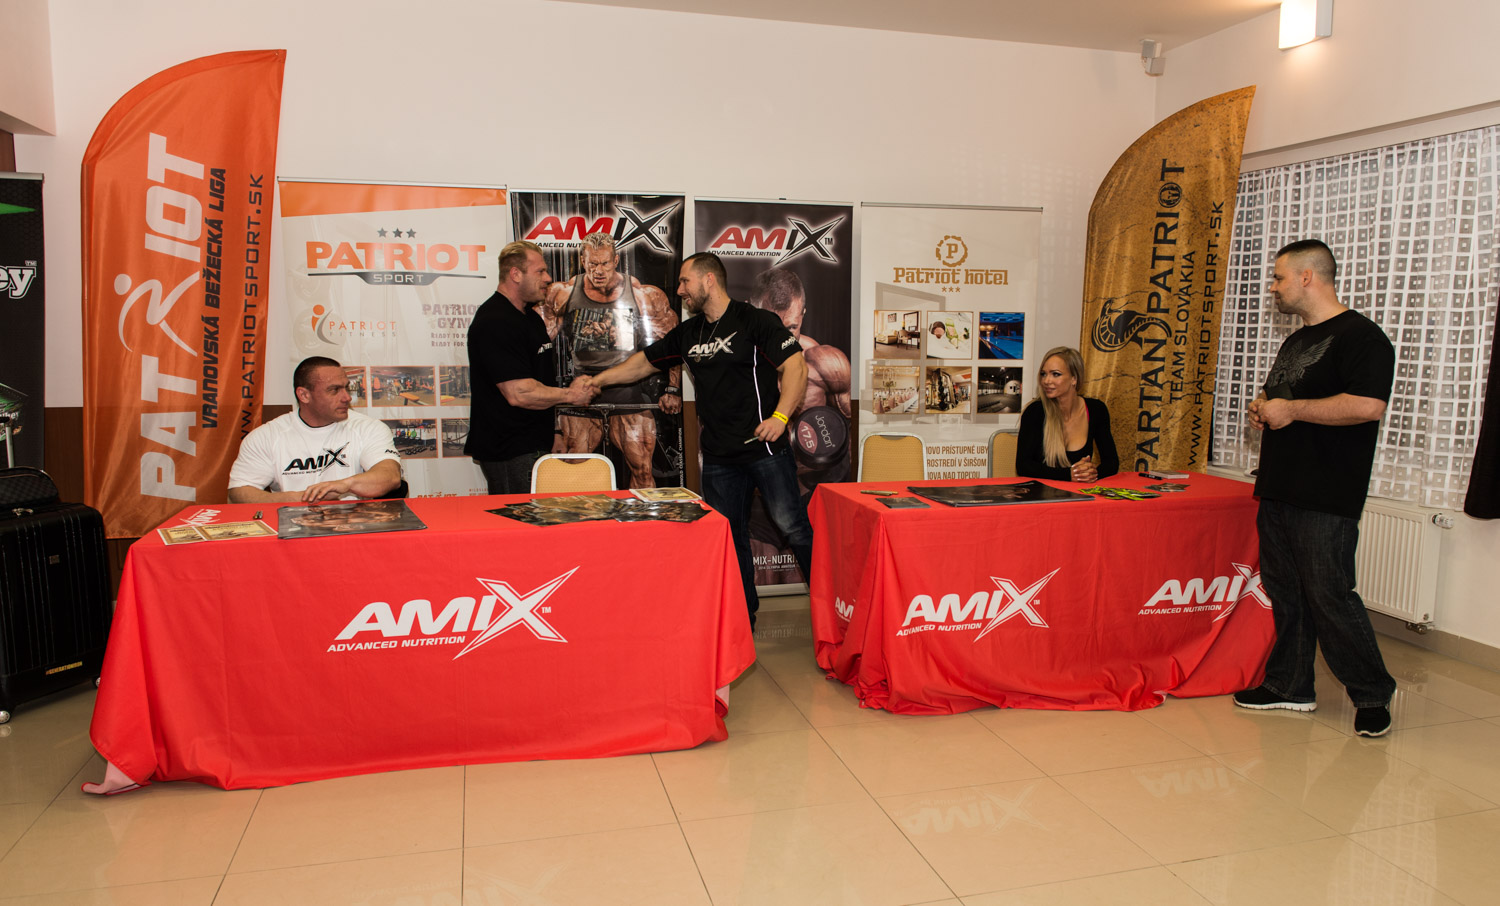 2016 AMIX Patriot Cup - Autogramiáda